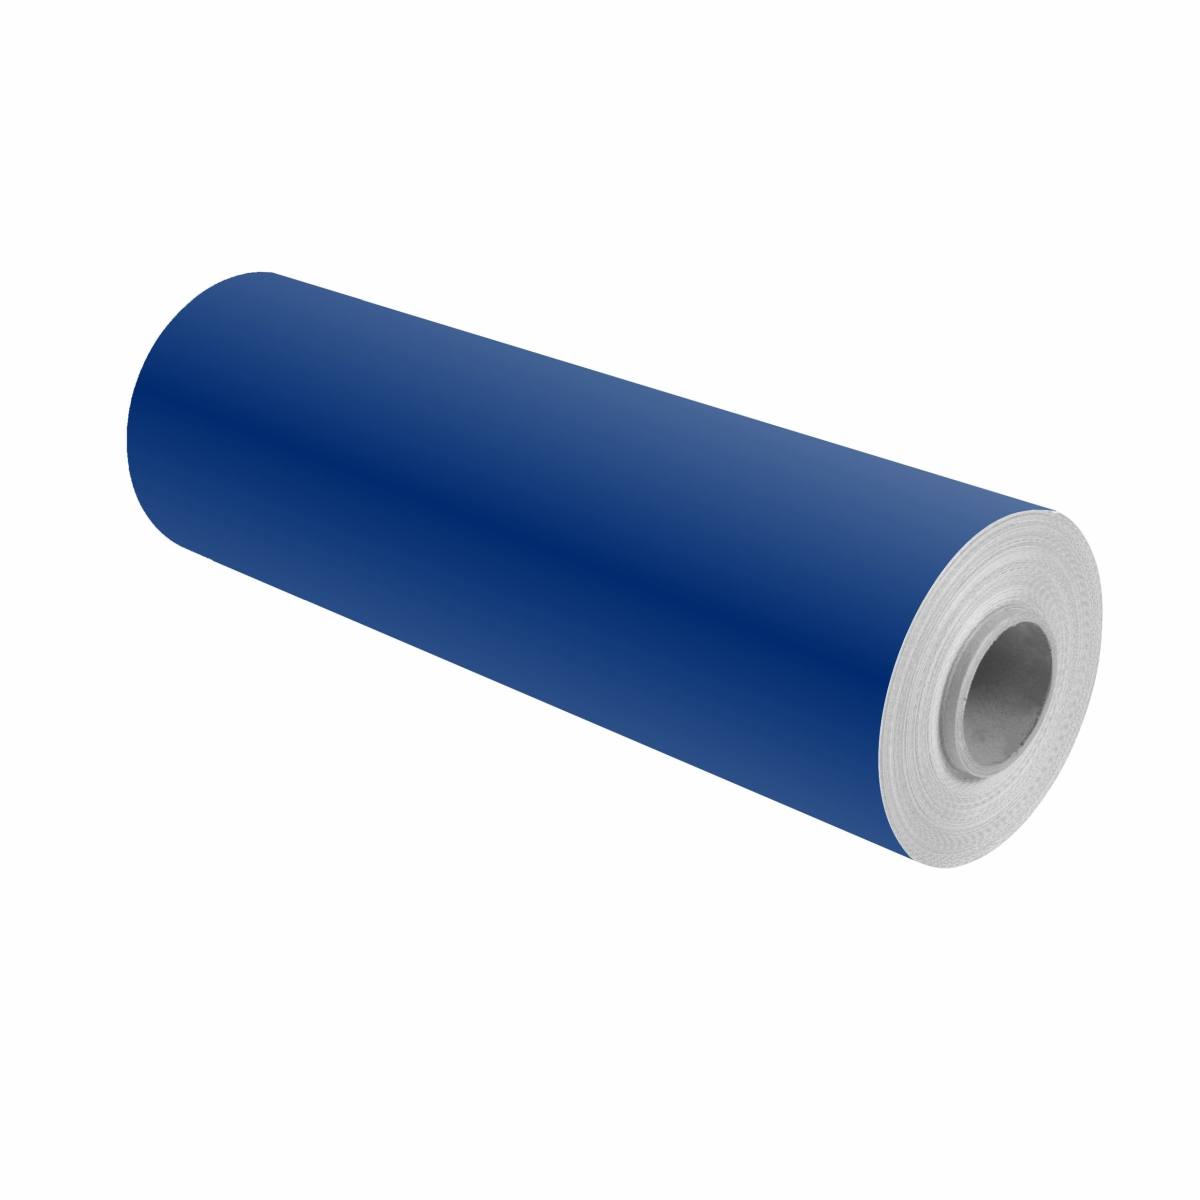 3M Scotchcal pellicola colorata 100-37 blu oltremare 1,22m x 25m